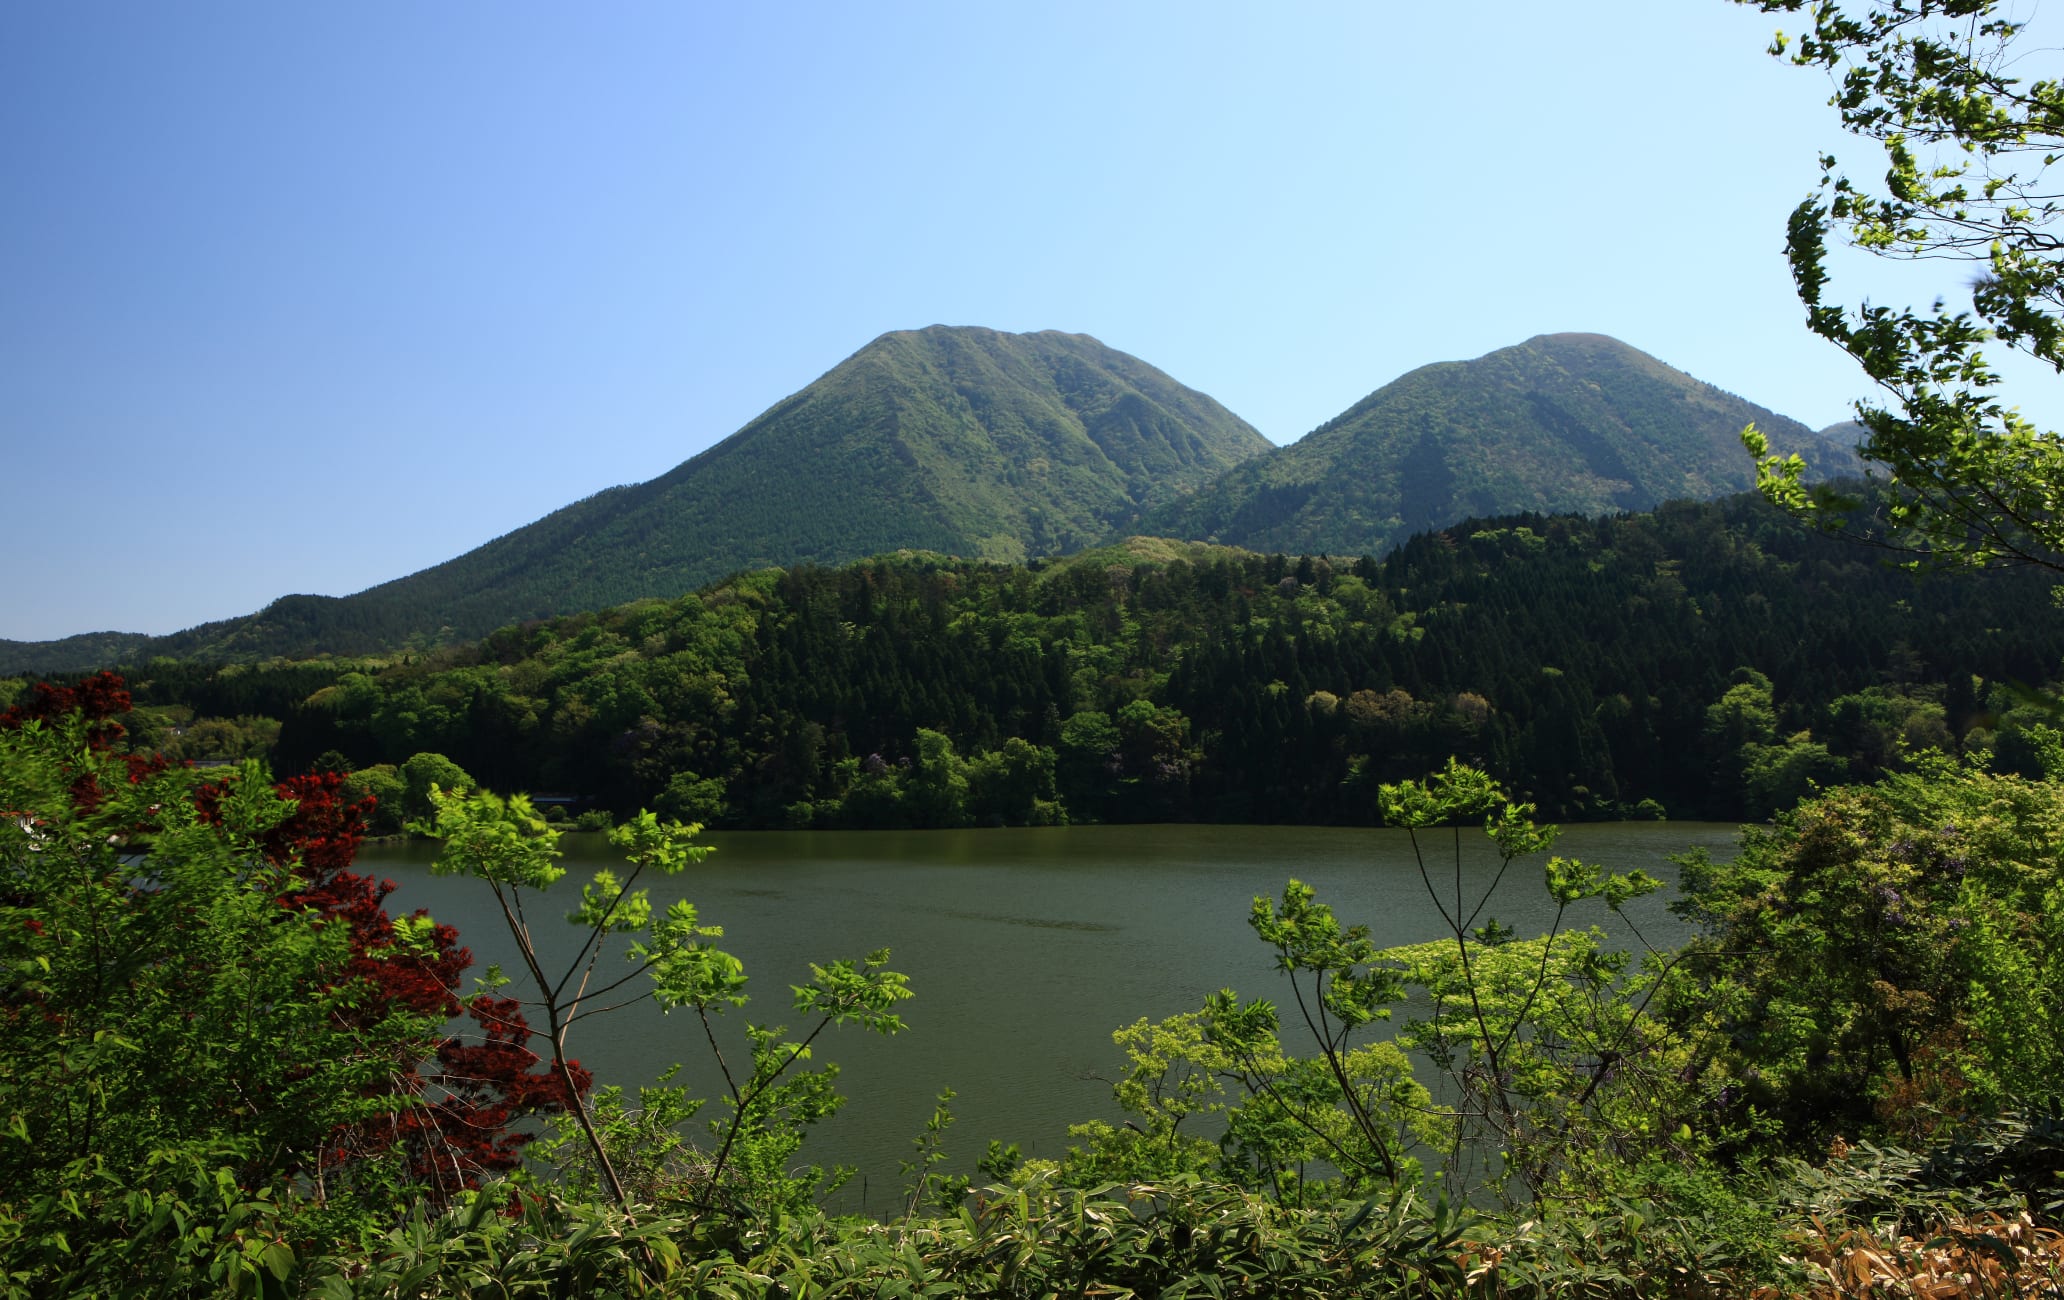 Mt. Sanbe